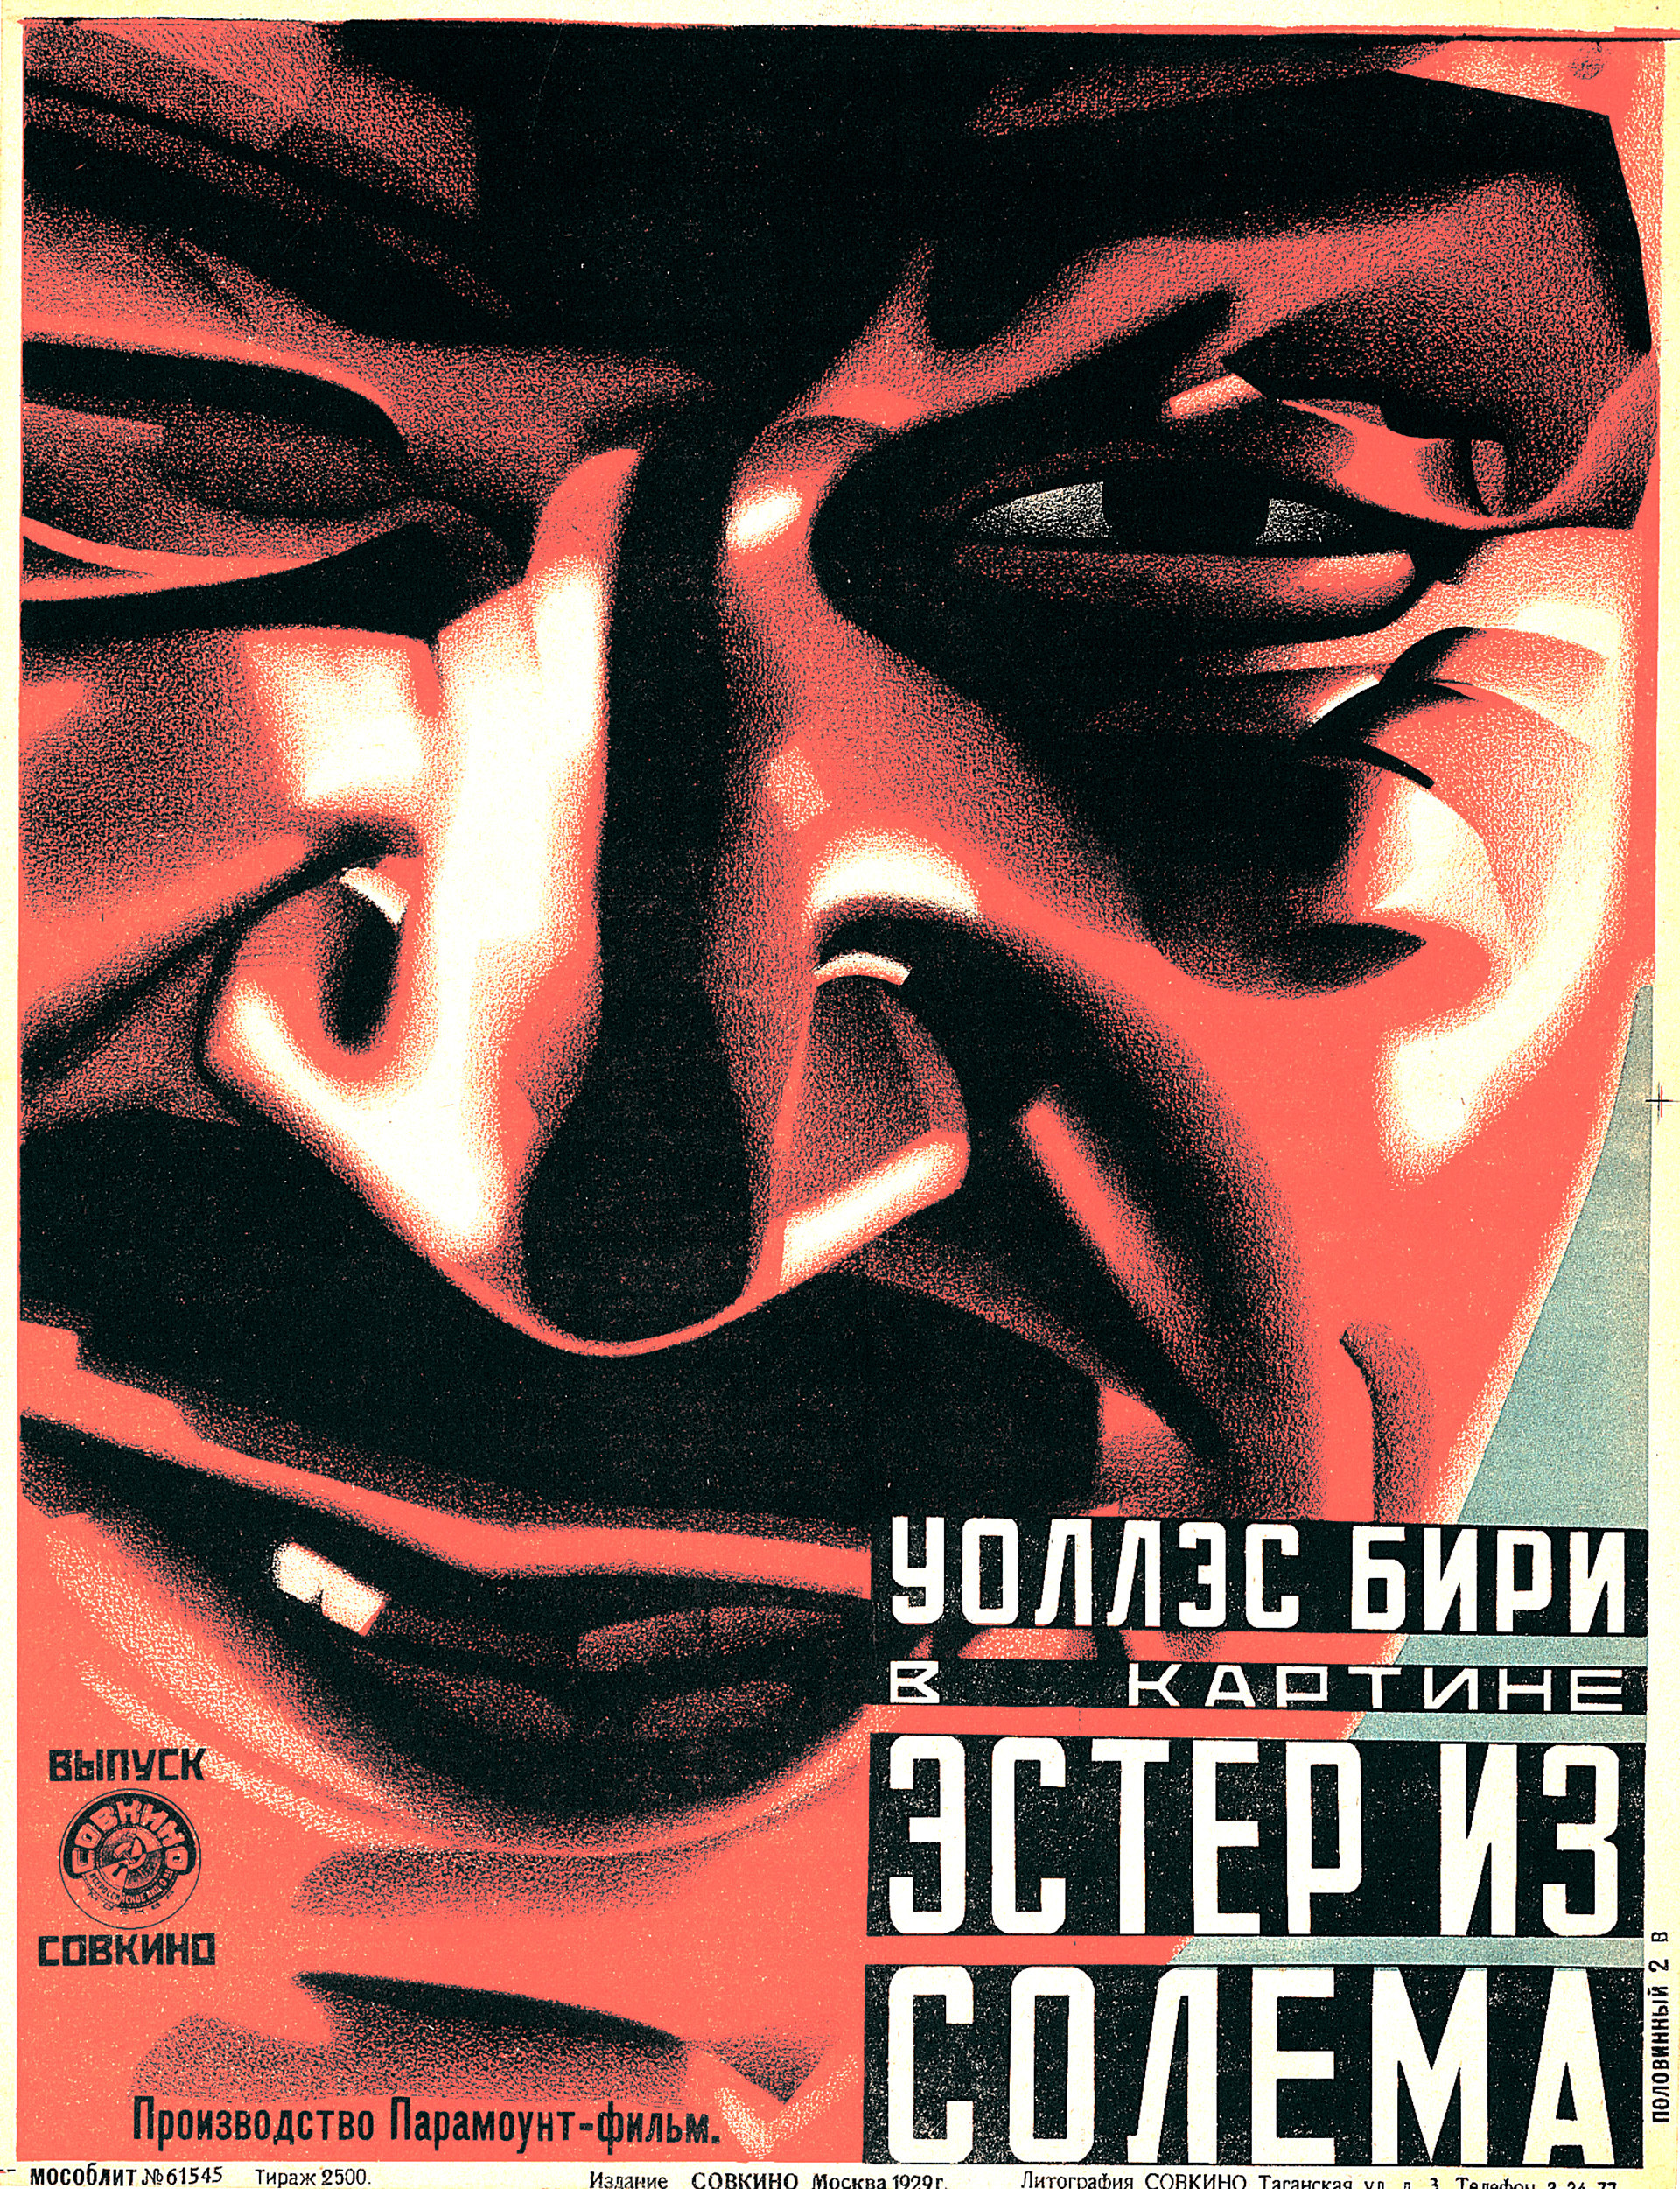 Anónimo, cartel para la película ‘Ester iz Solema’, 1929.